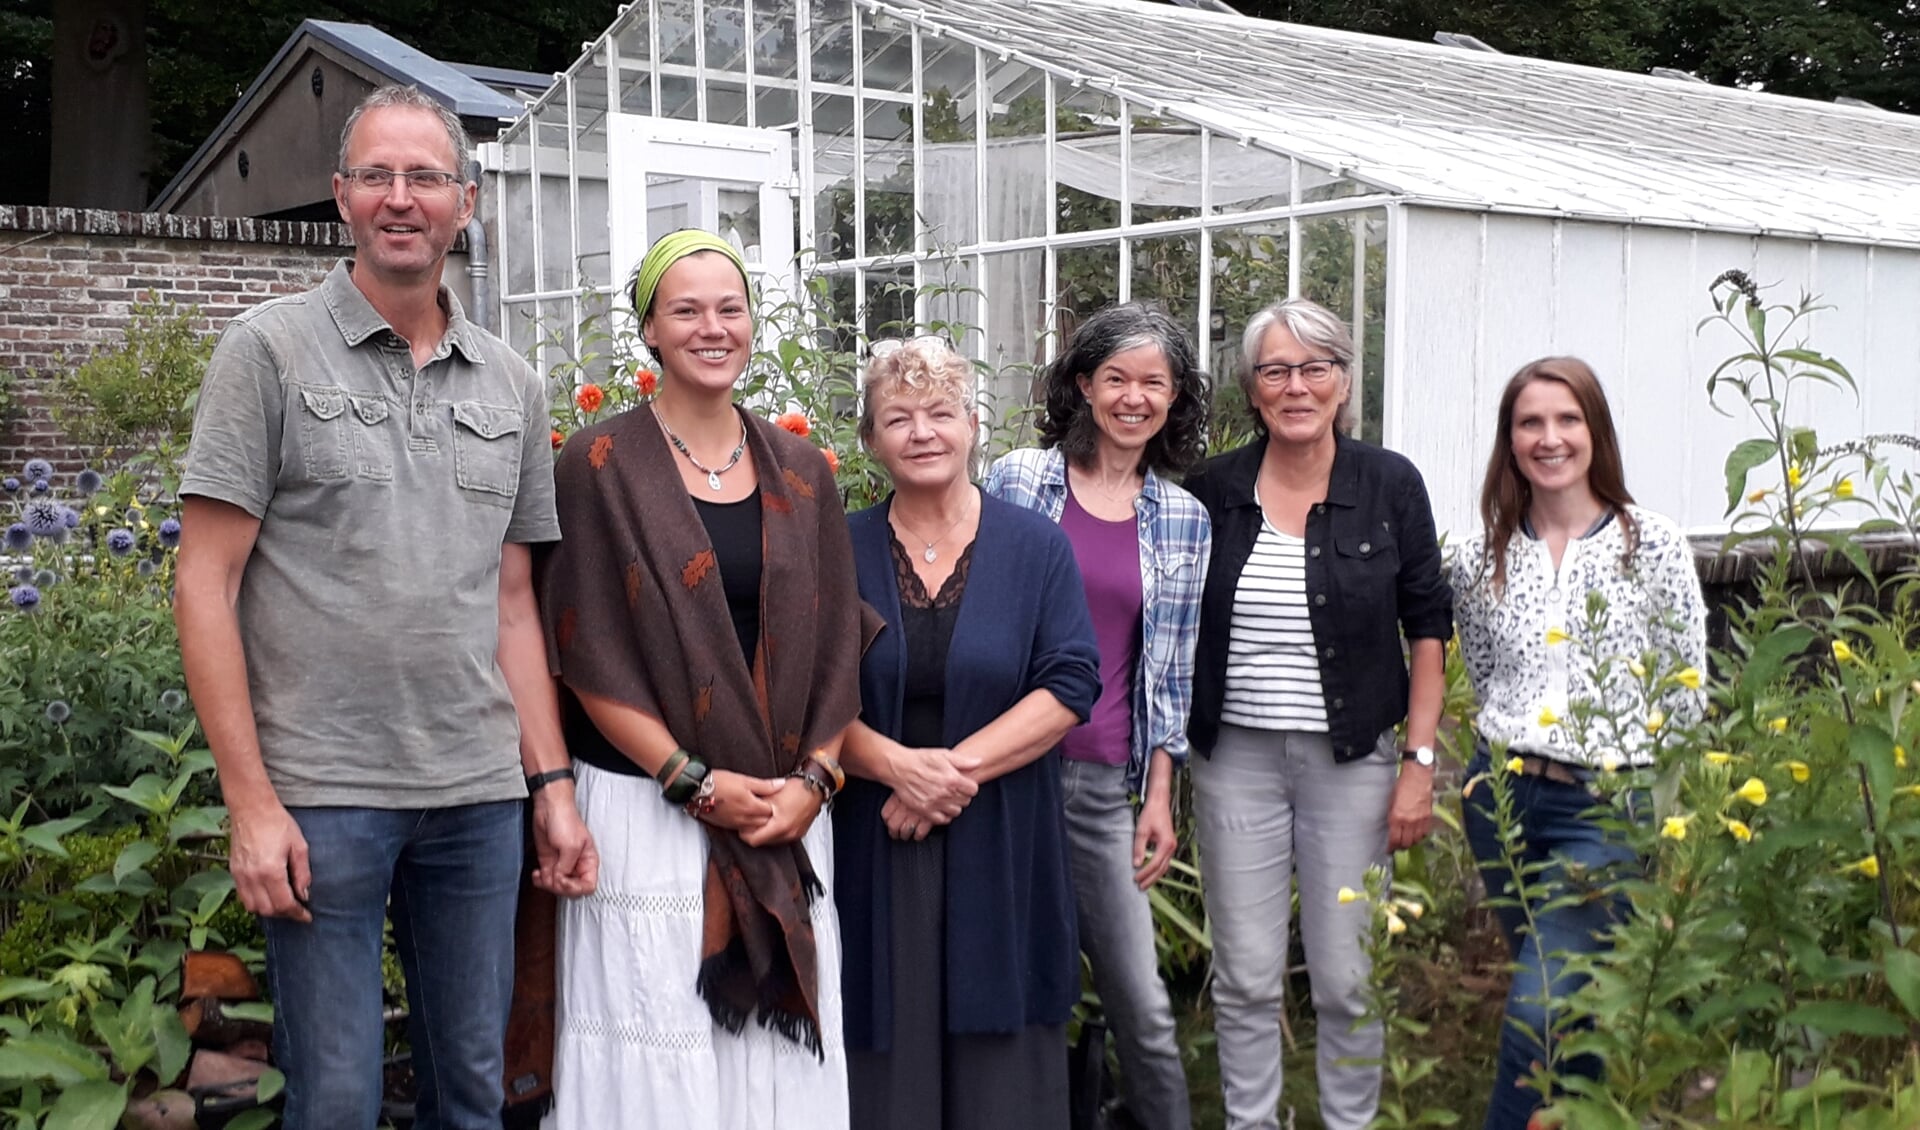 Genomineerd voor het Groene Lintje 2019 waren Luuk Schouten (tuinderij Eyckenstein), Astrid Nubé en Trudie van Haaster (RecycleLAB) en Joanne Ronhaar, Willy Douma en Maaike Noorlander (BiltsHeerlijk).